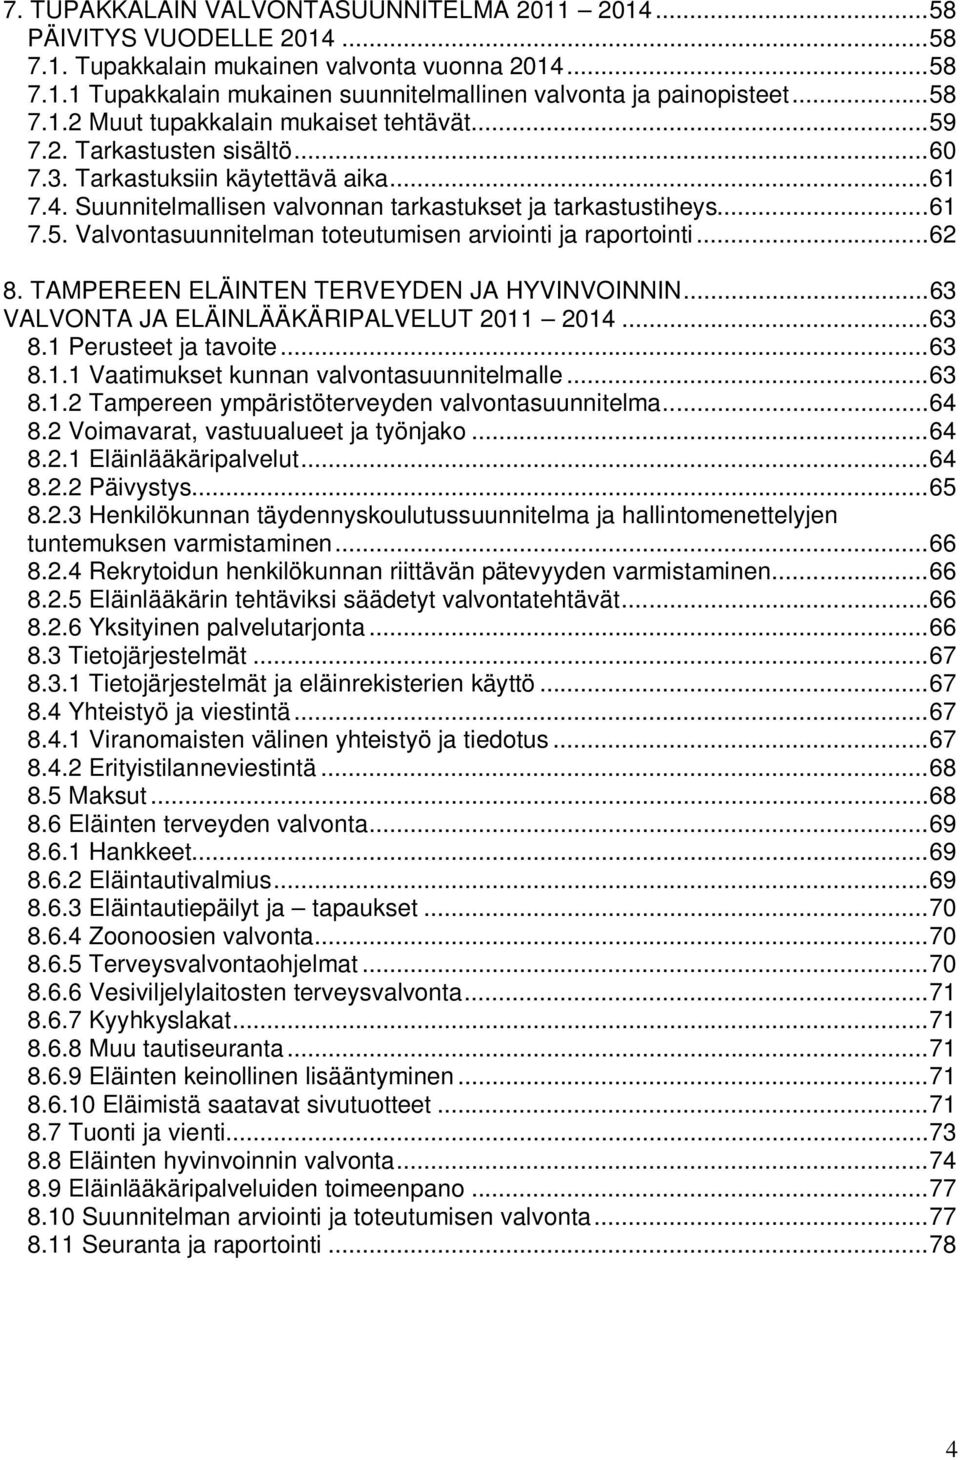 .. 62 8. TAMPEREEN ELÄINTEN TERVEYDEN JA HYVINVOINNIN... 63 VALVONTA JA ELÄINLÄÄKÄRIPALVELUT 2011 2014... 63 8.1 Perusteet ja tavoite... 63 8.1.1 Vaatimukset kunnan valvontasuunnitelmalle... 63 8.1.2 Tampereen ympäristöterveyden valvontasuunnitelma.